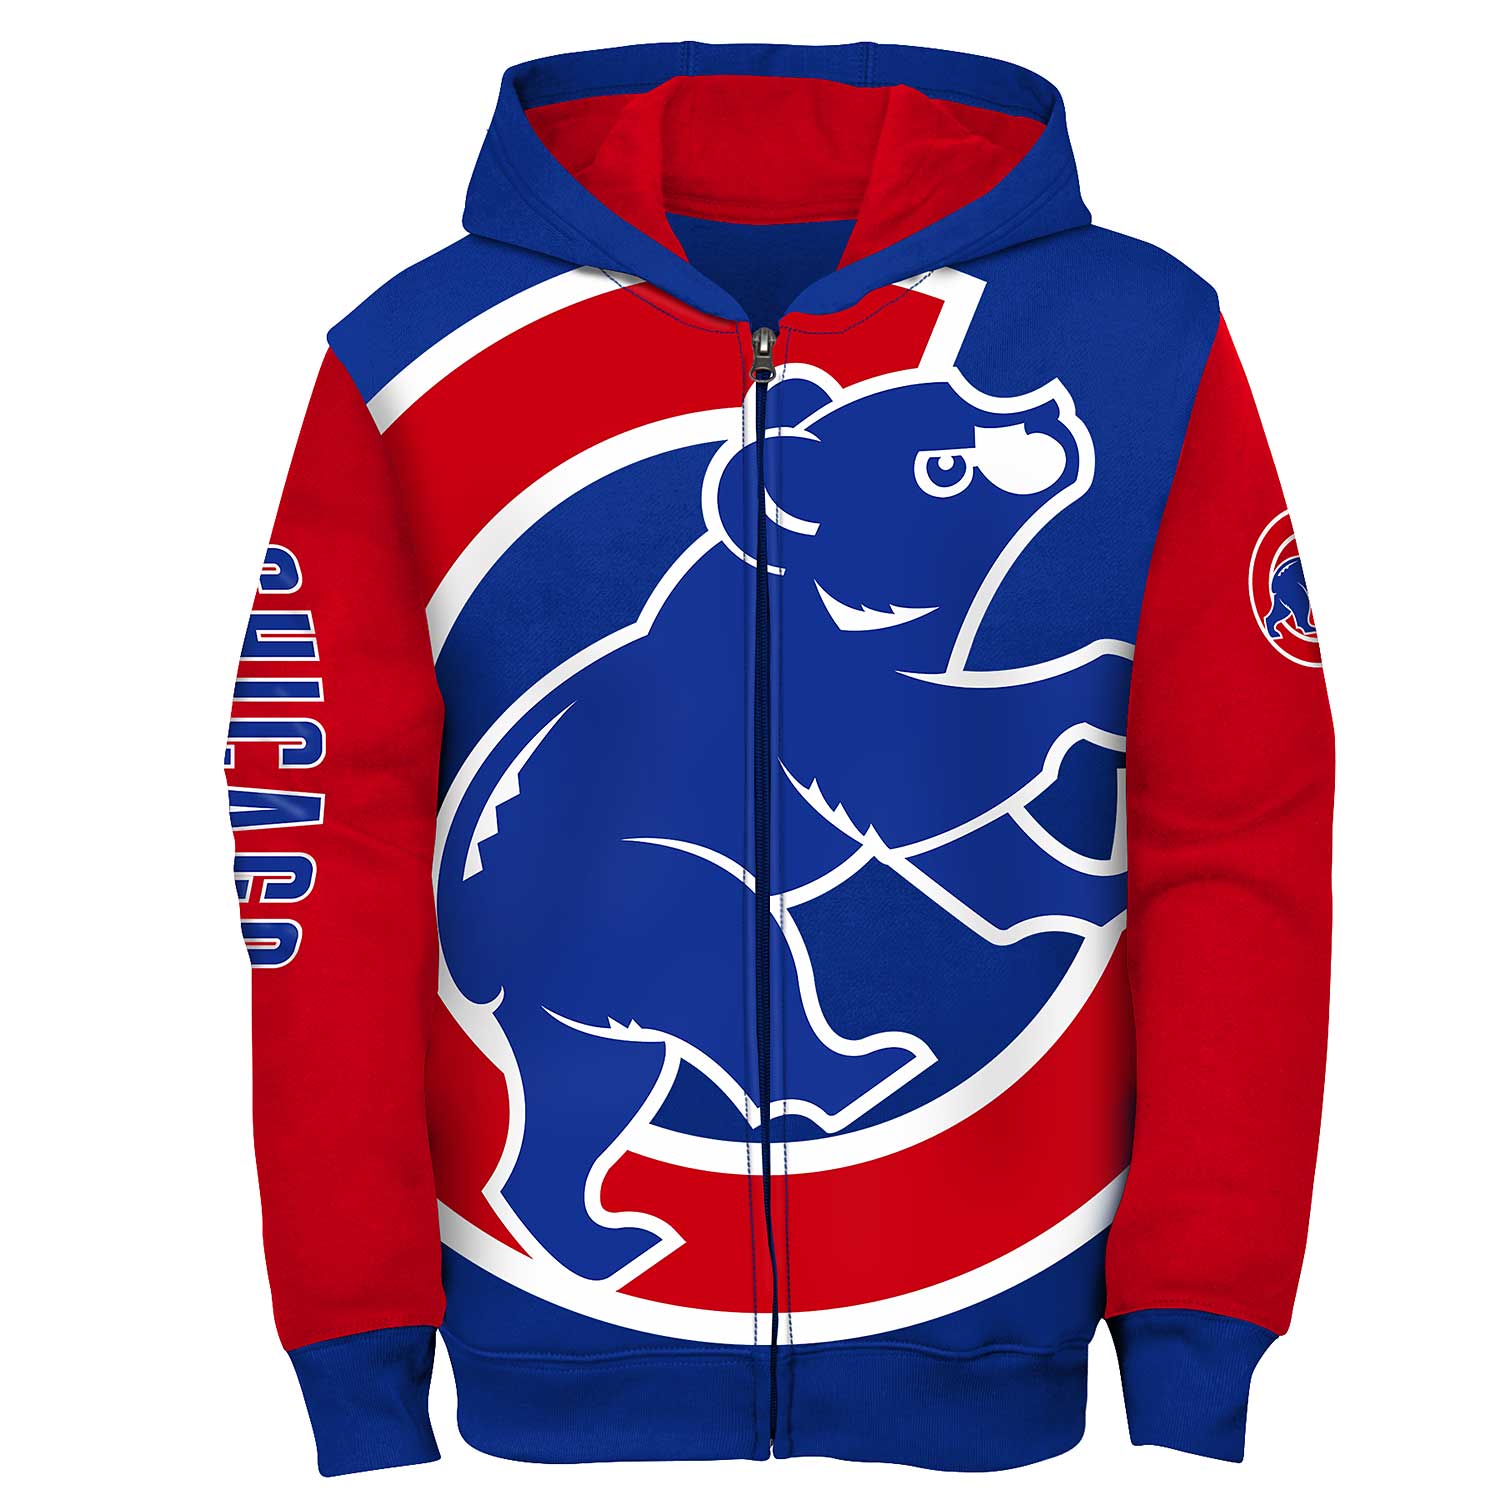 Chicago Cubs Sweatshirt, Cubs Hoodies, Cubs Fleece